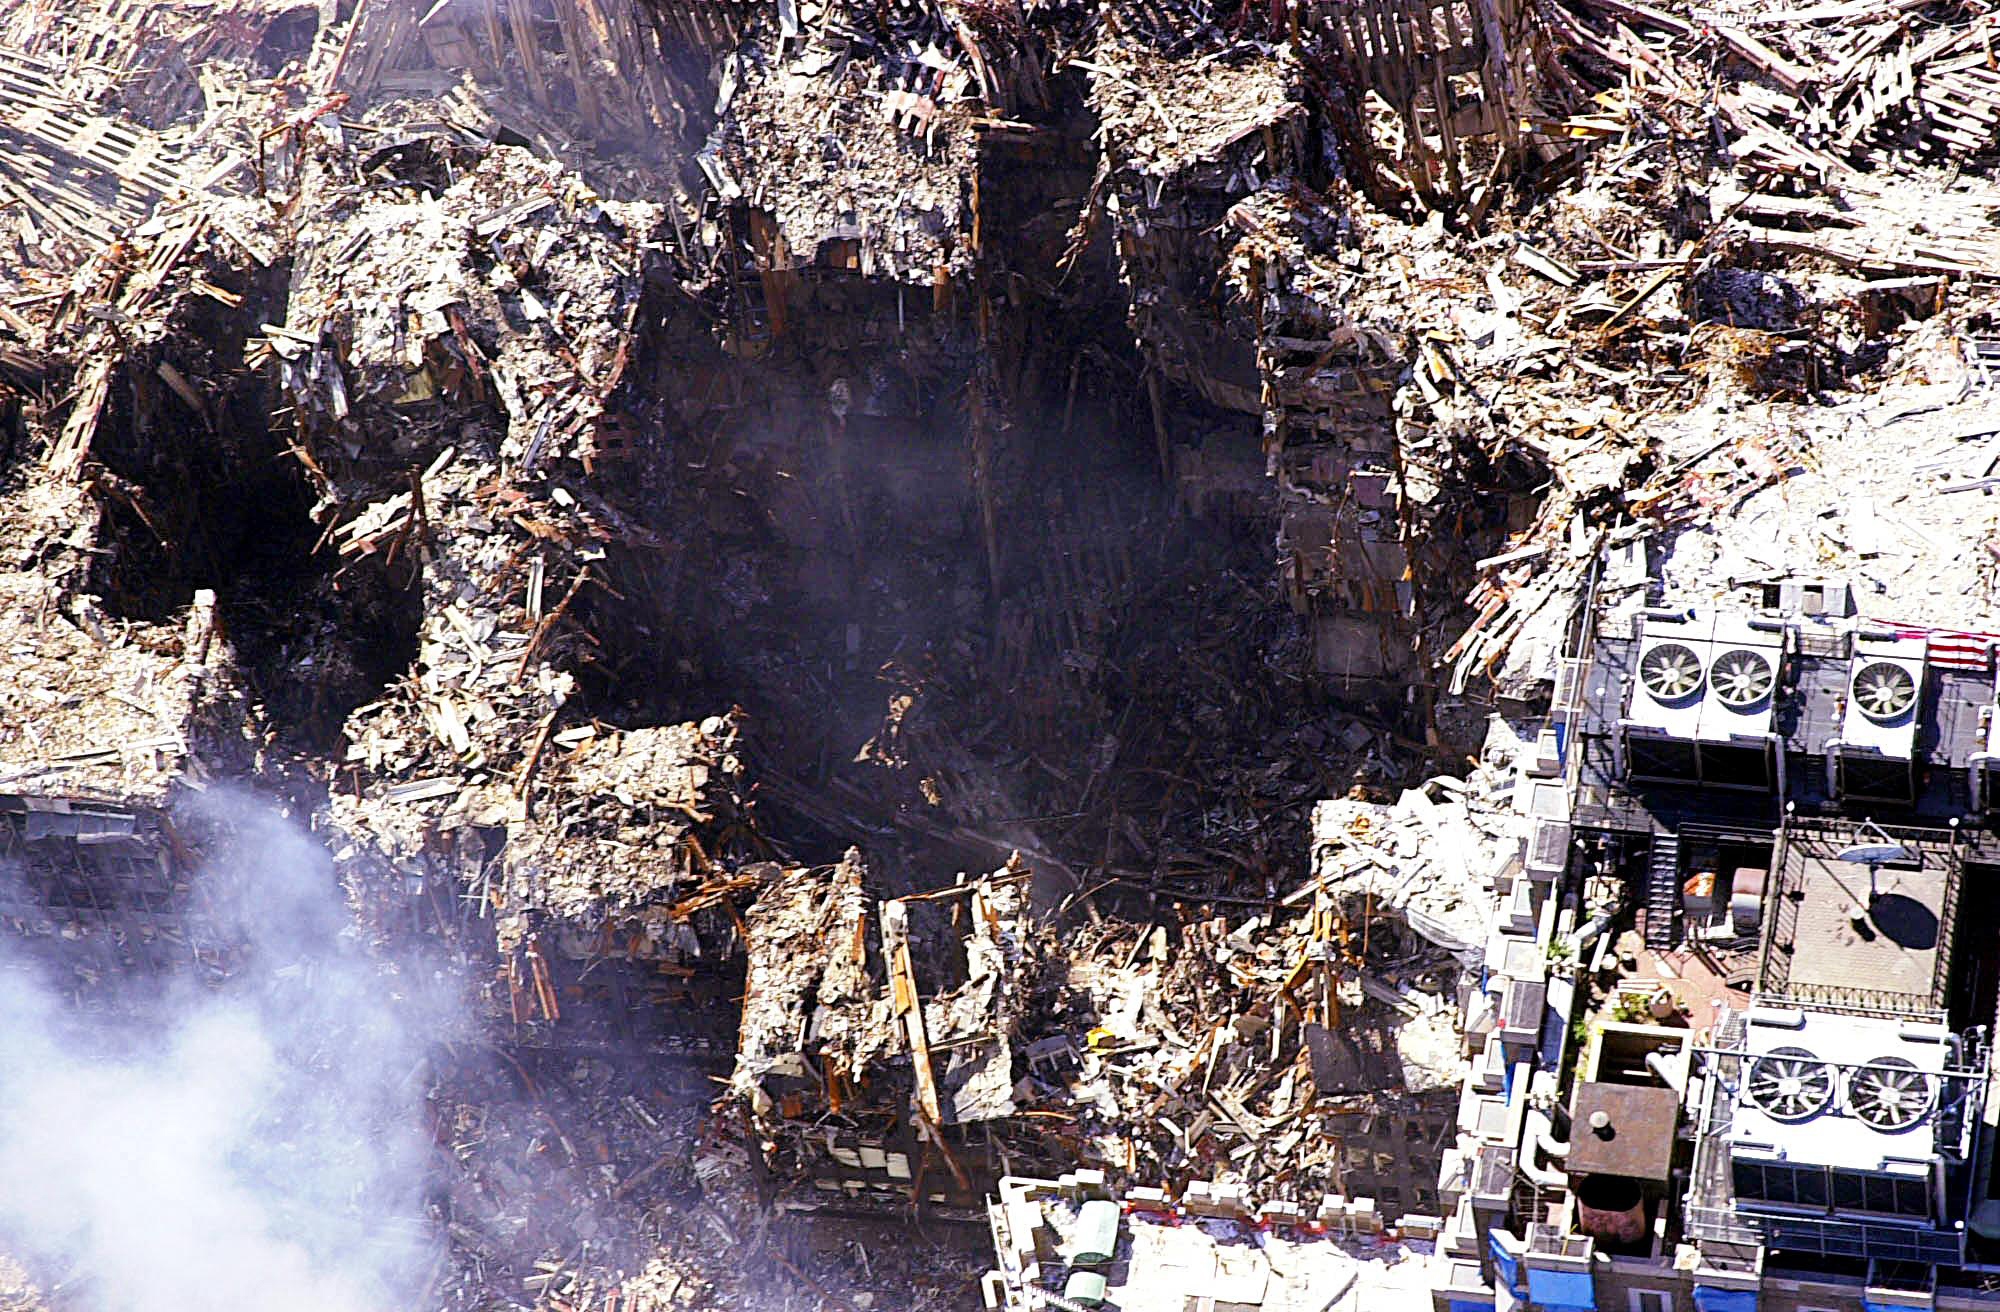 Сколько человек погибло в торговом. Башни-Близнецы 11 сентября 2001. Всемирный торговый центр башни Близнецы 11 сентября. Обломки ВТЦ 11 сентября. WTC ground Zero 9/11.